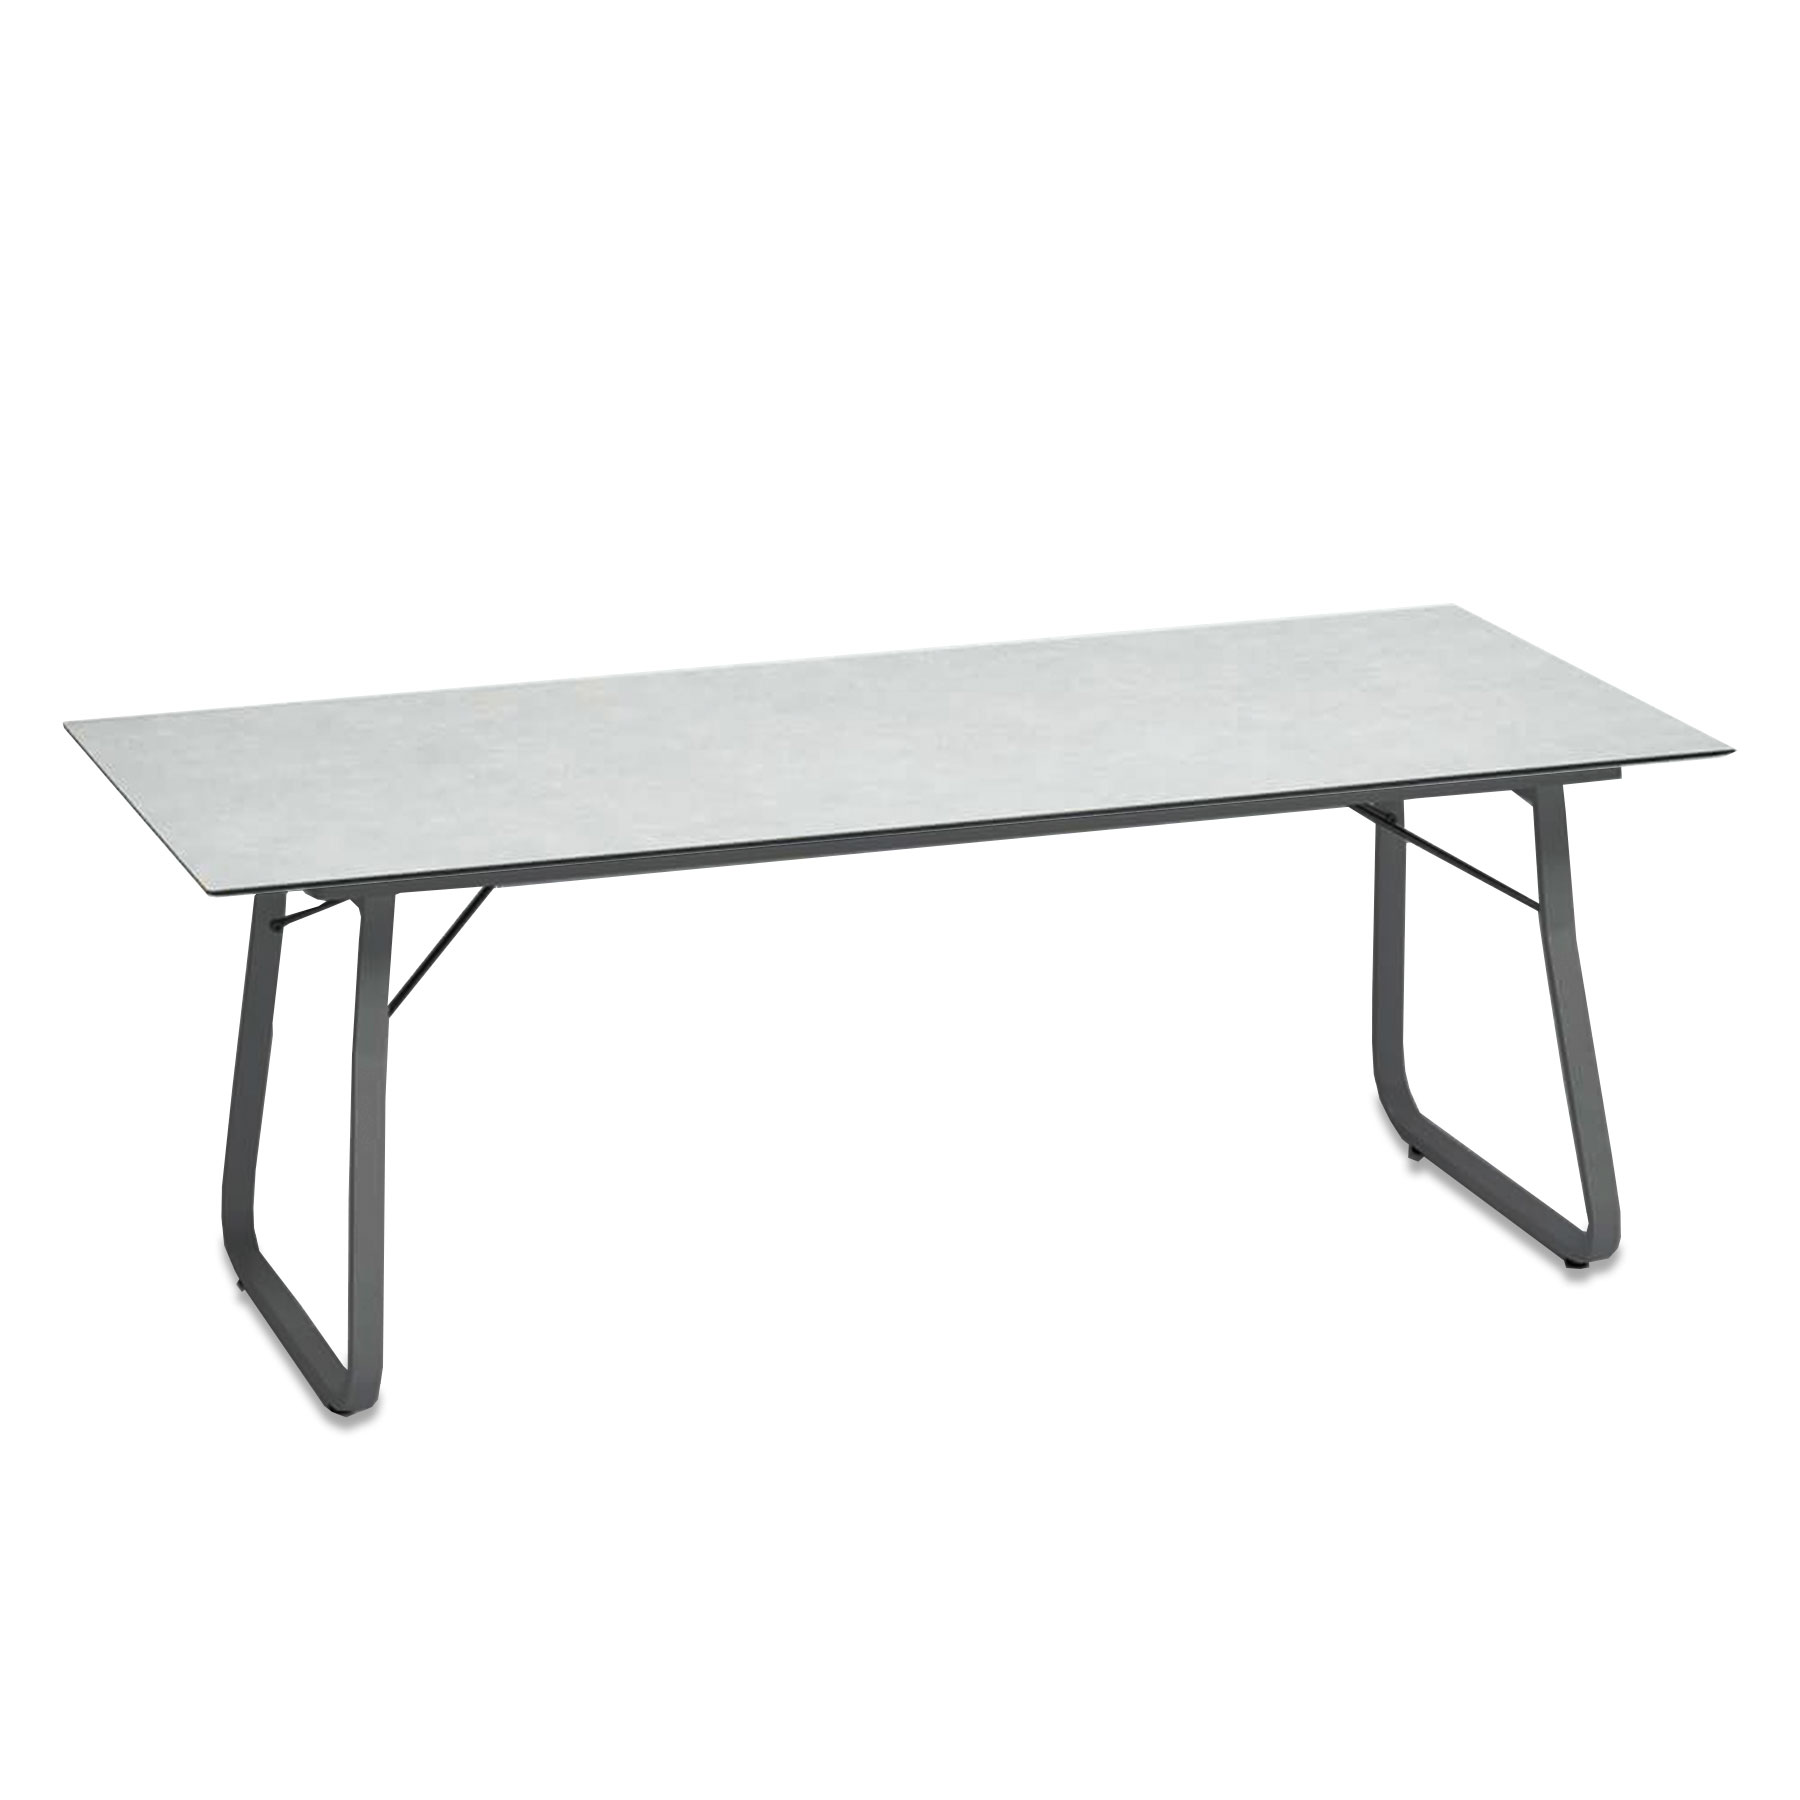 Ahoi Tisch Groß in Grau Metallic mit 200x90cm Platte, Tischplatte Aus Hpl in Weiß